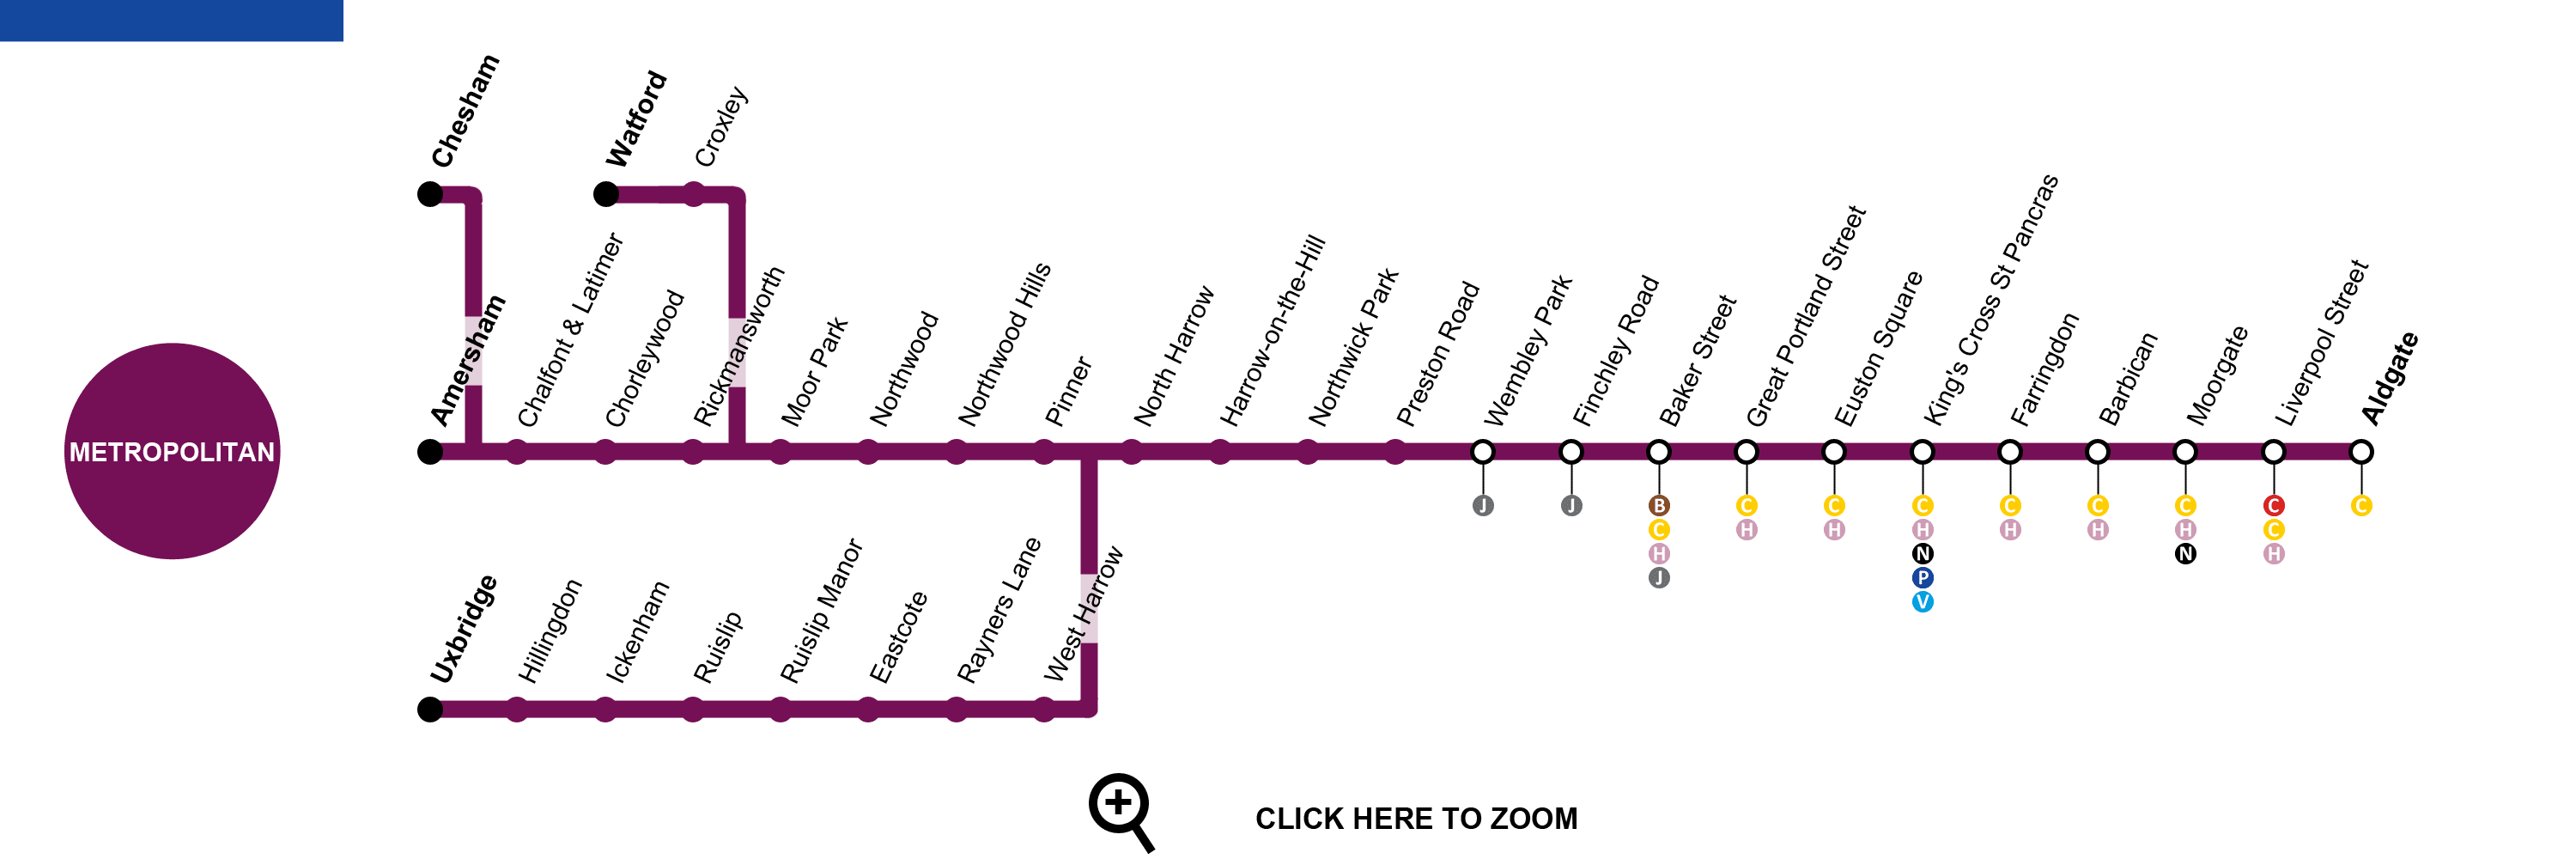 Metropolitan Line Map London